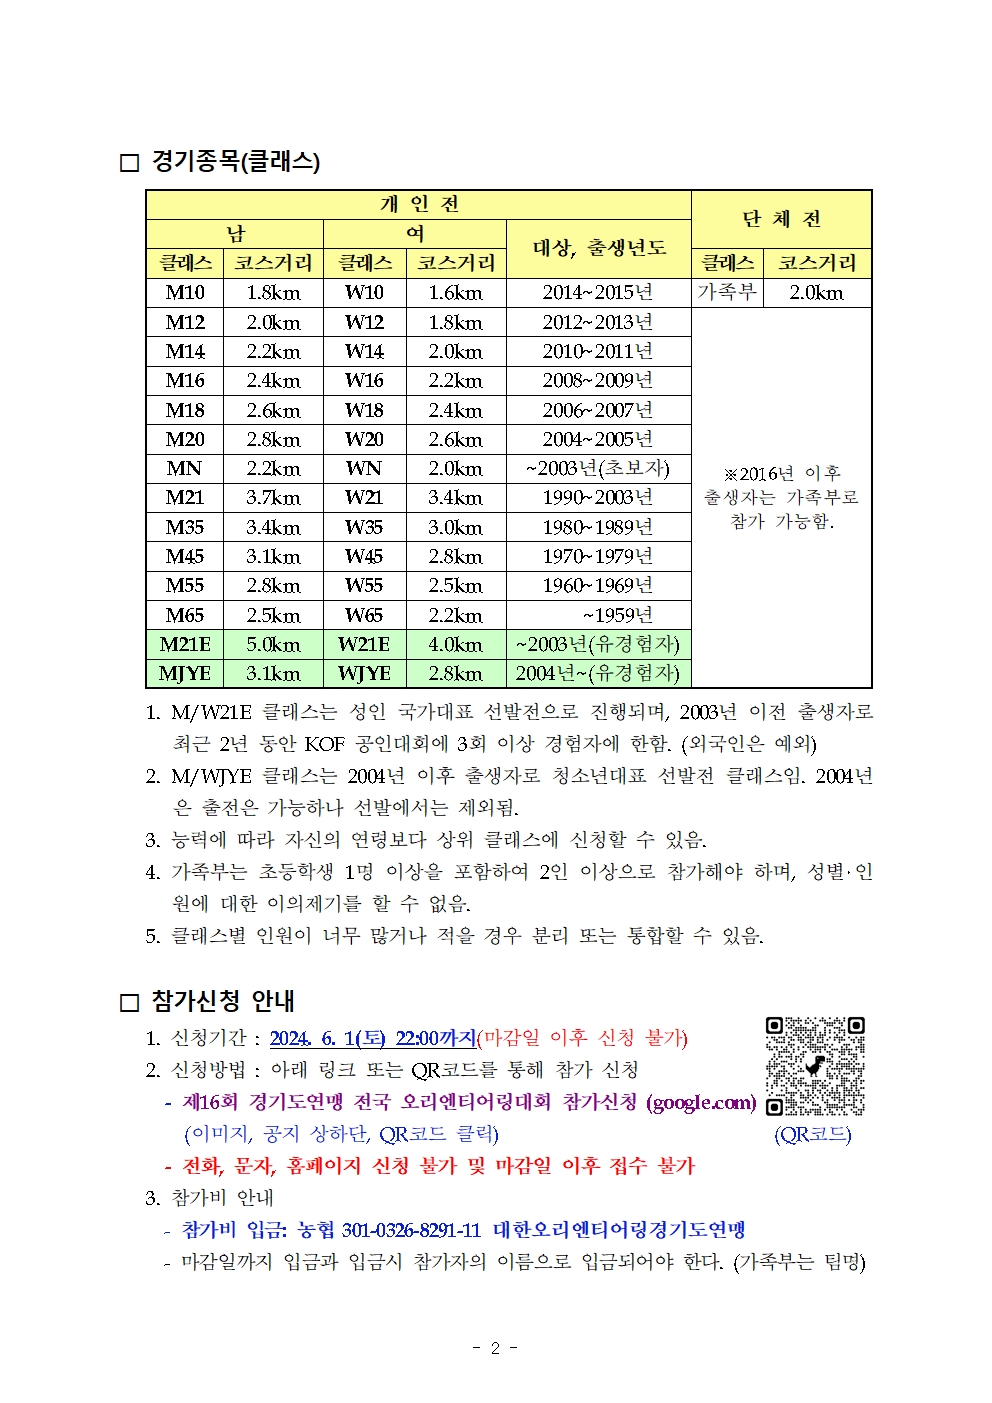 제16회 경기도연맹 전국 오리엔티어링대회 공지002.jpg